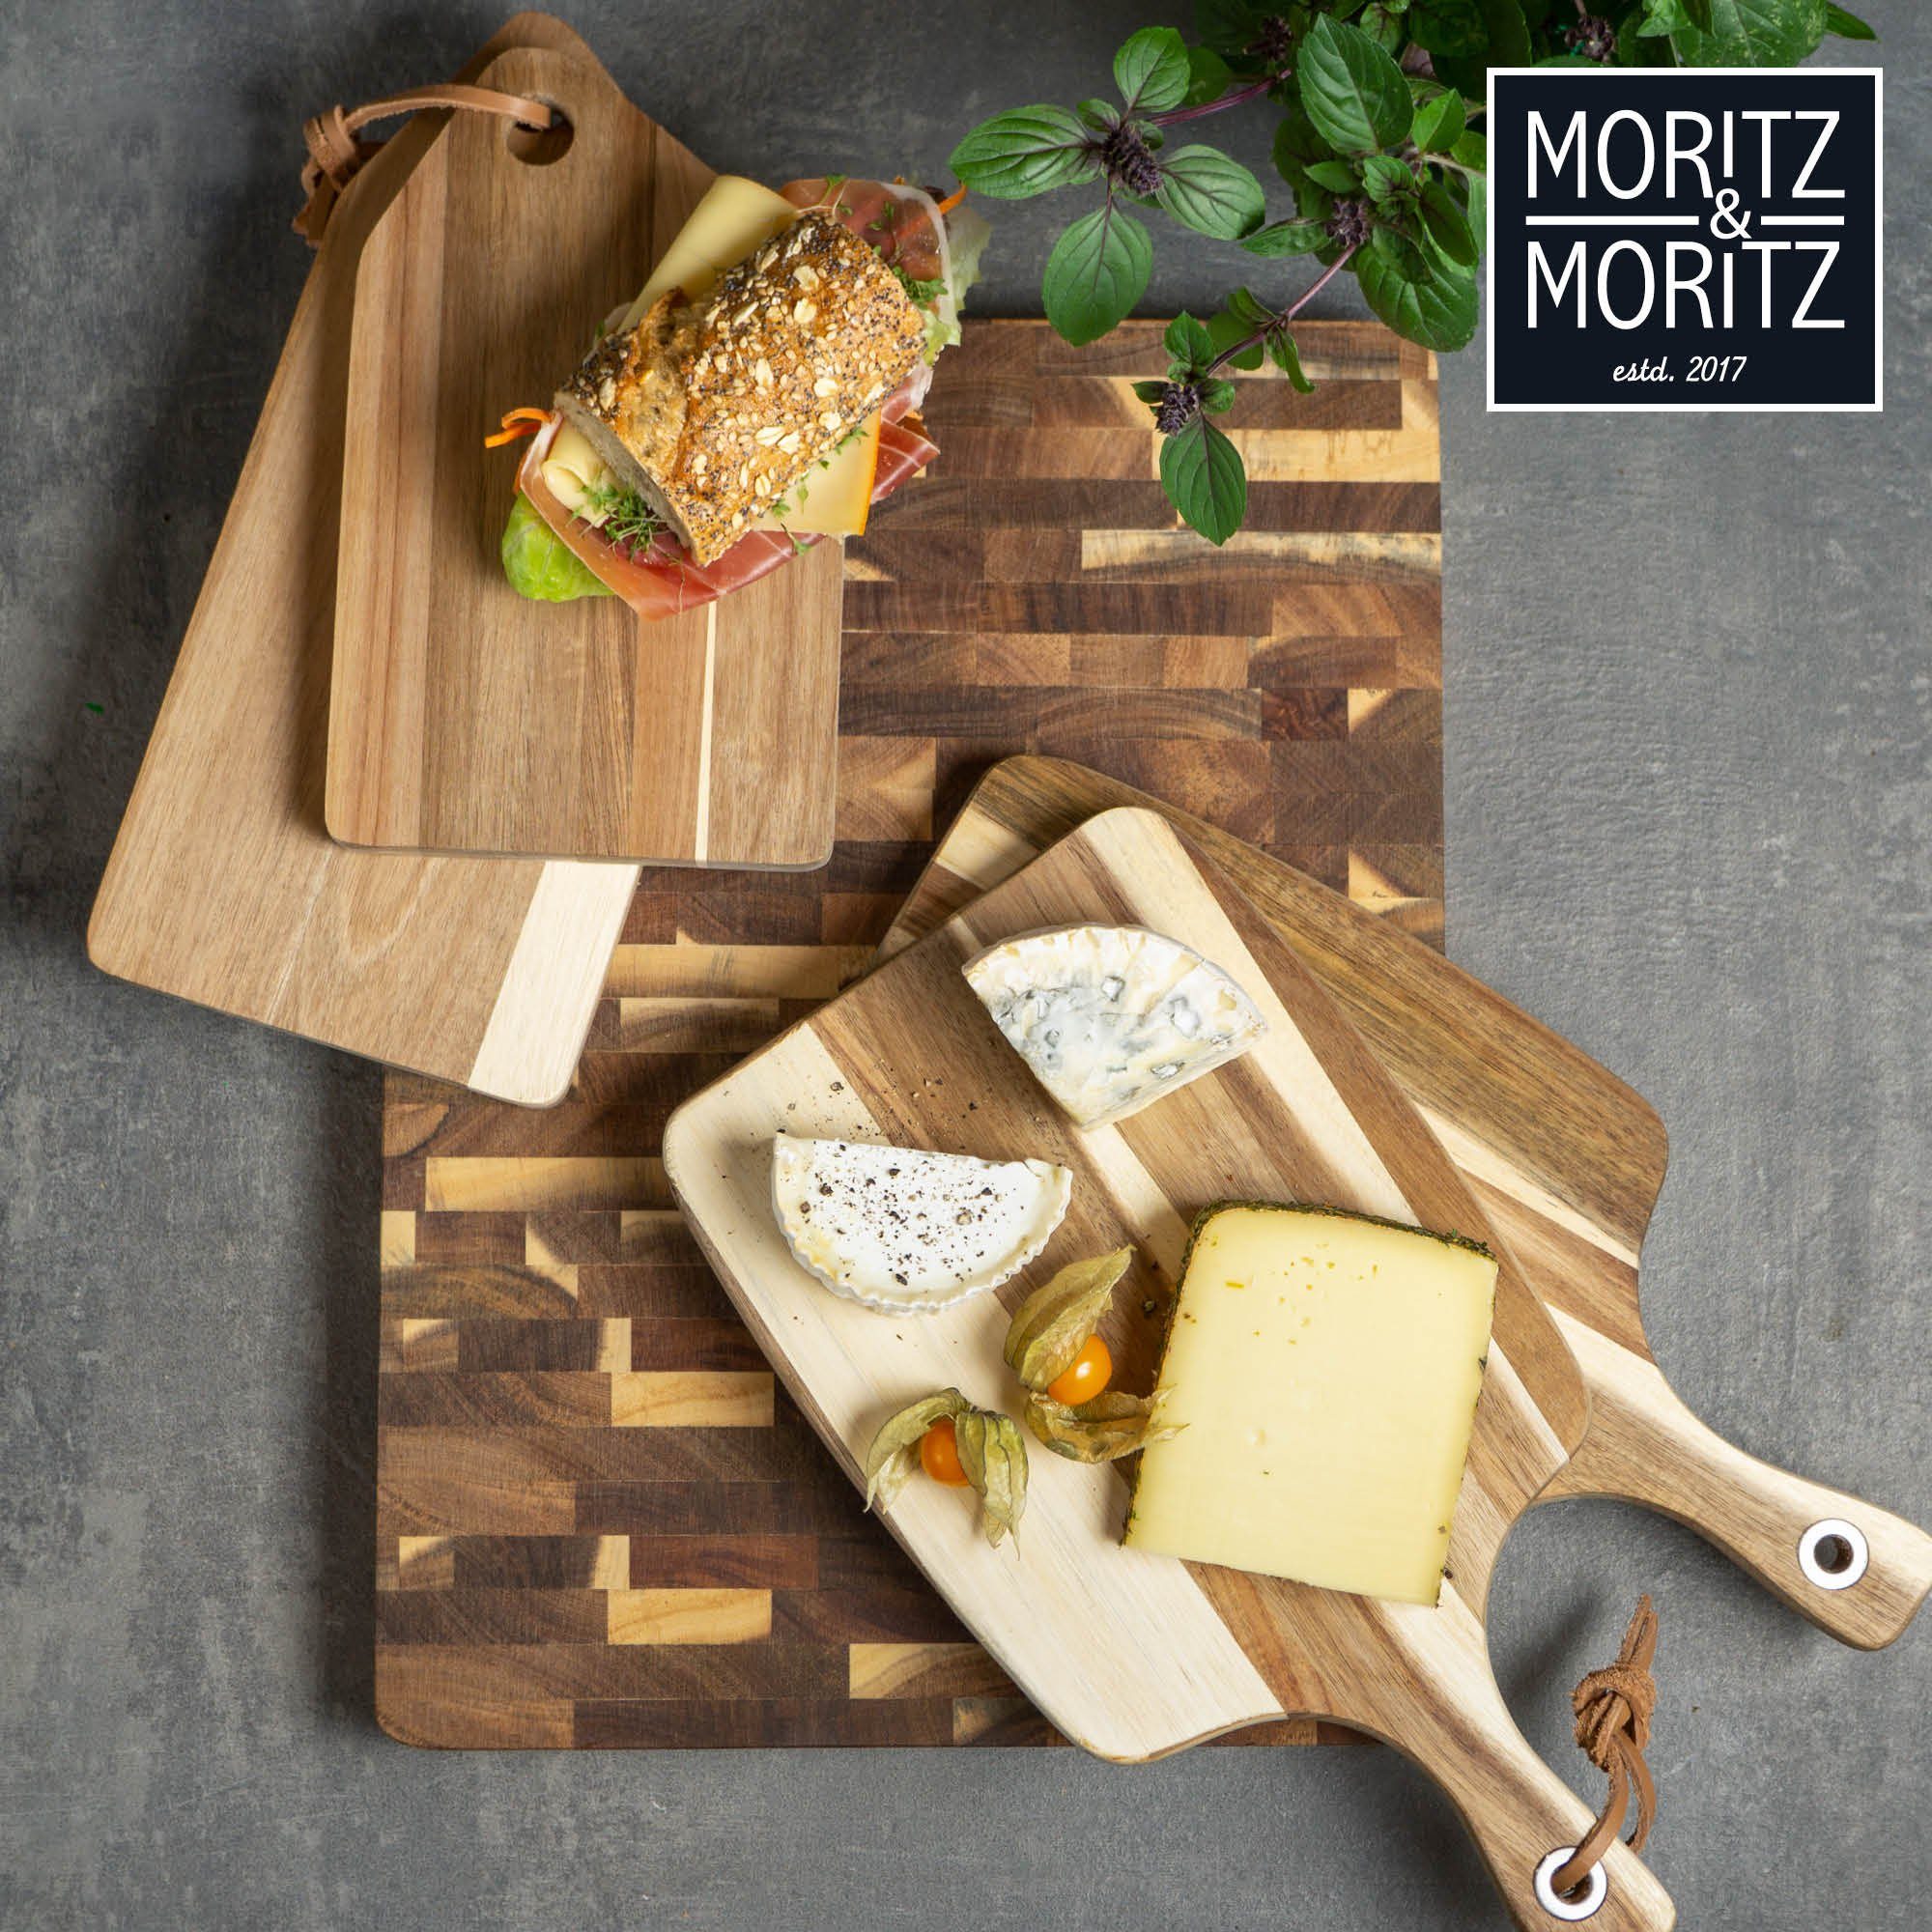 Moritz & Moritz Schneidebrett - Zum Fleisch Groß Holzbrett 41x30x3cm, - Akazienholz, Küche Schneidebrett Brot, Antibakterielles Schneiden Obst, und Holz Käse von Gemüse, Akazie (Akazienholz)